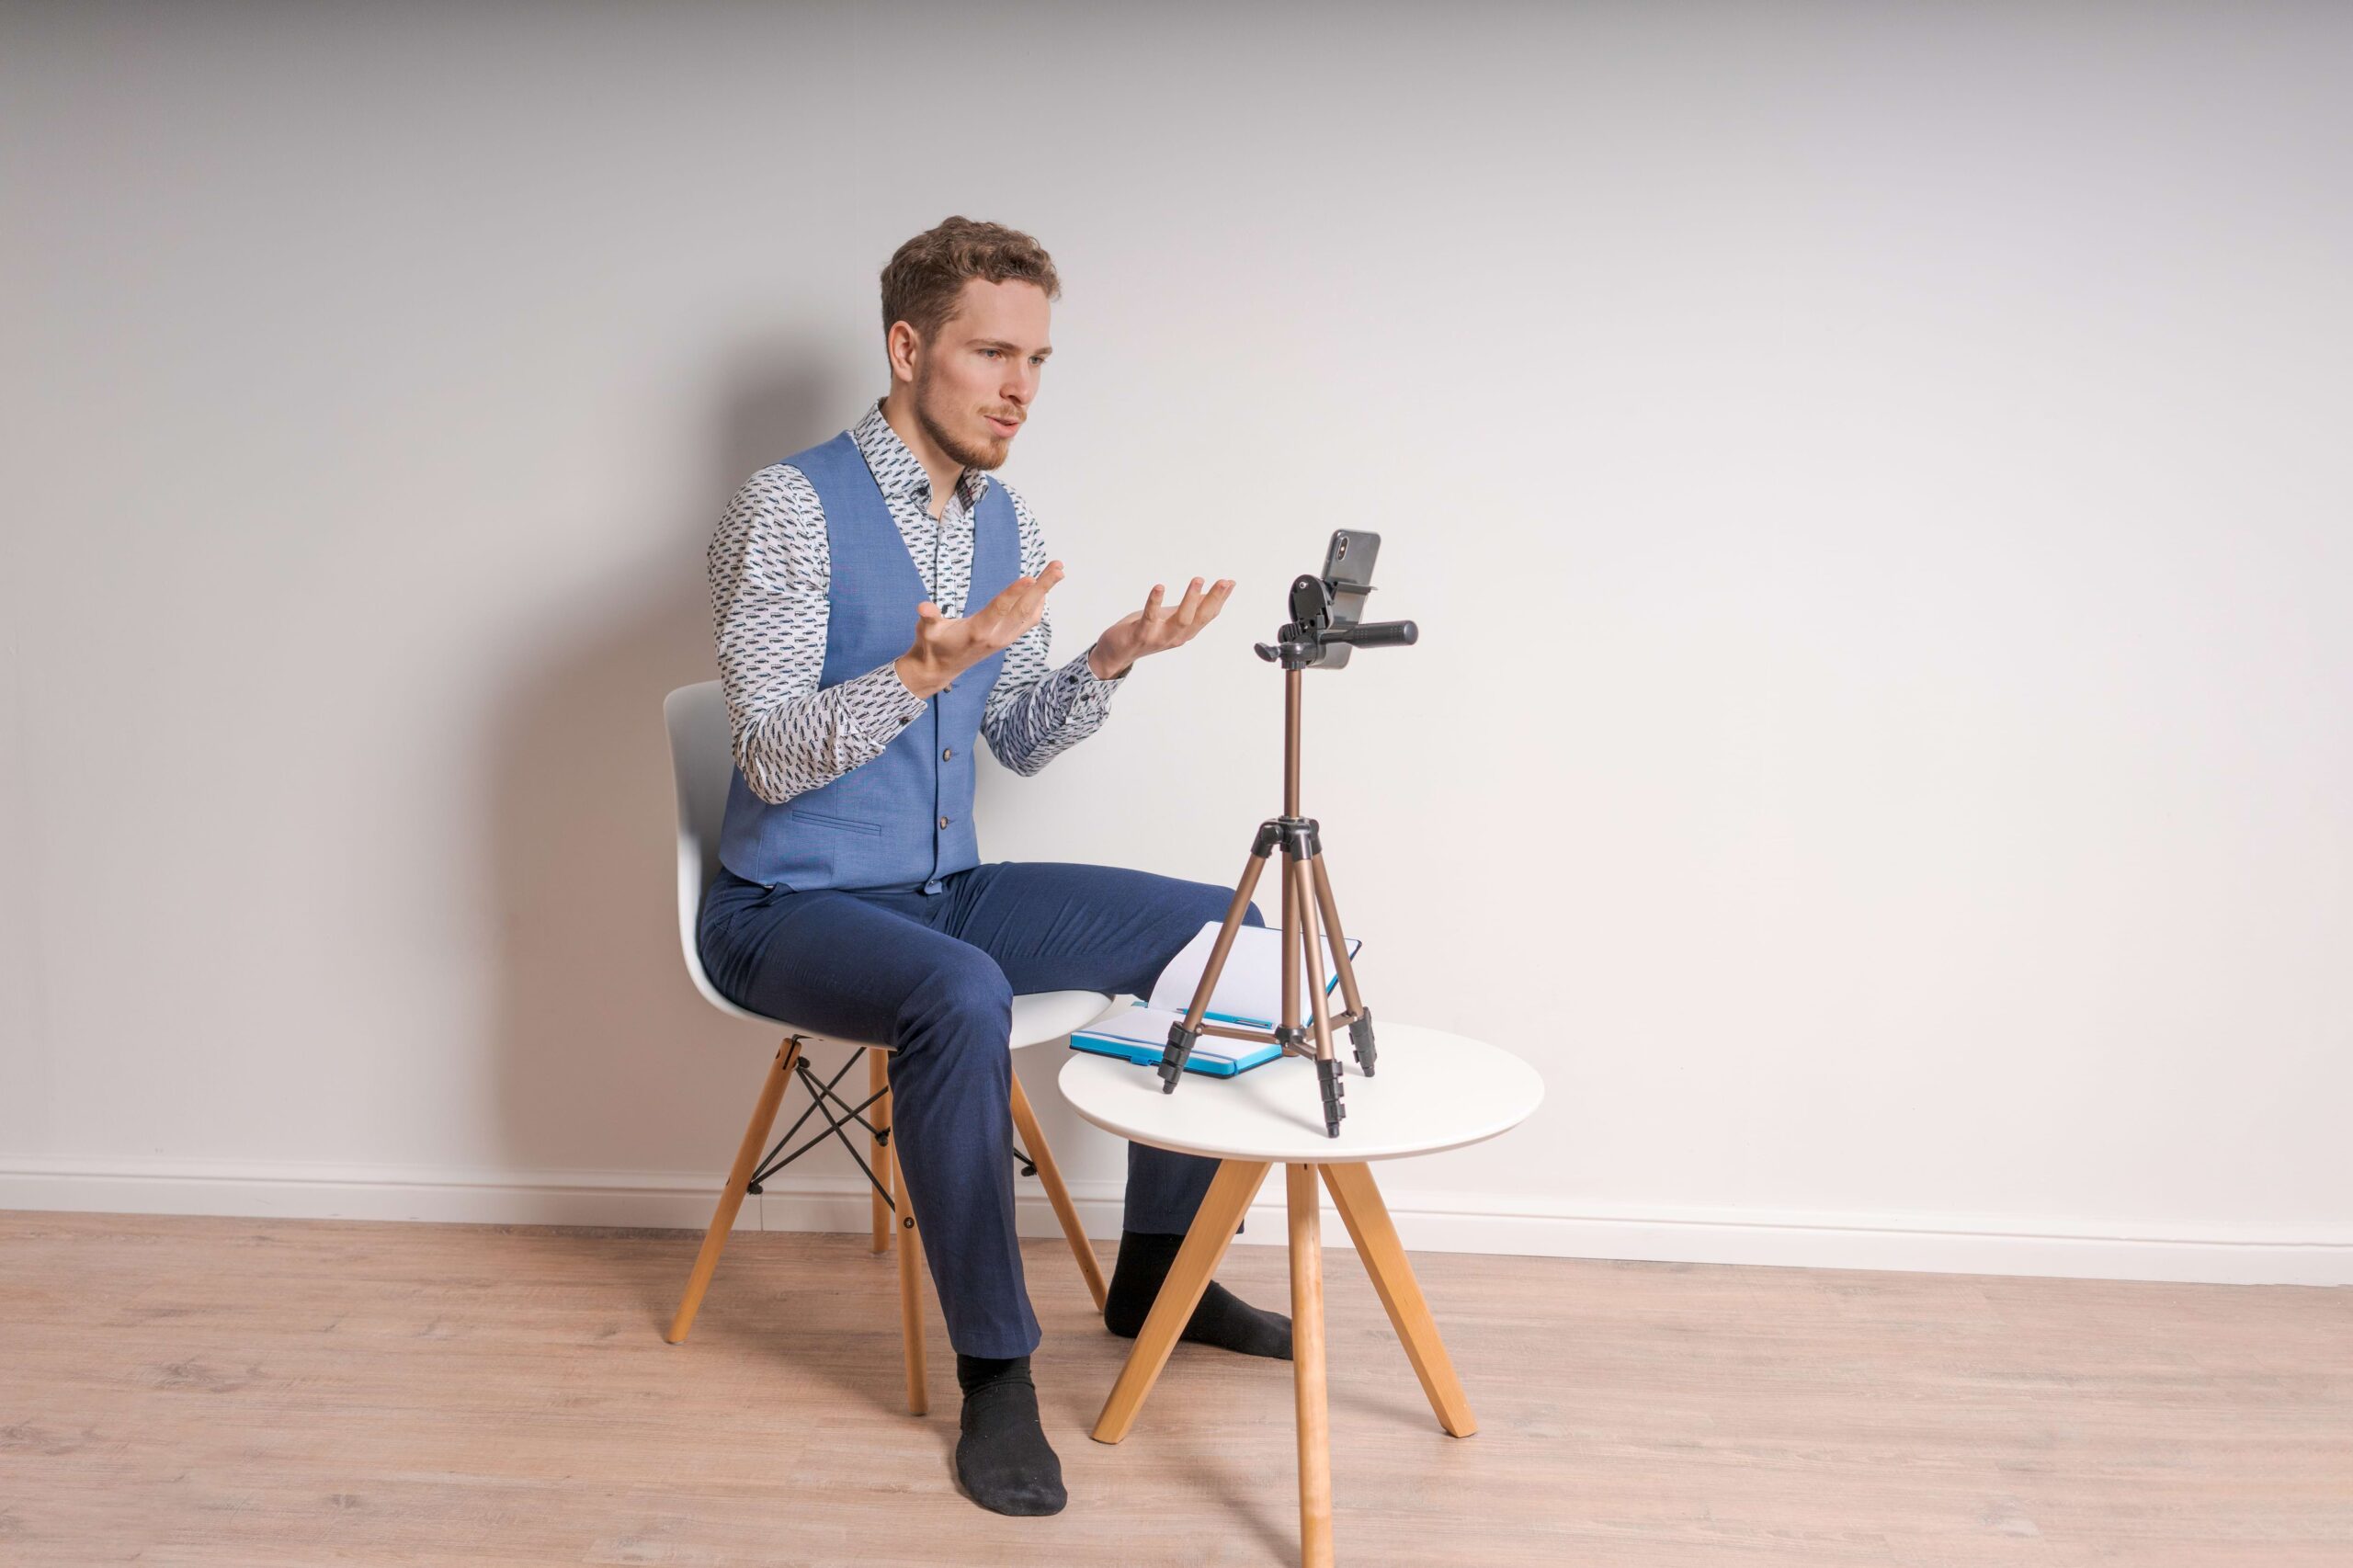 Homem sentado em cadeira branca, olhando para o celular preto em um tripé preto fazendo gestos de confusão